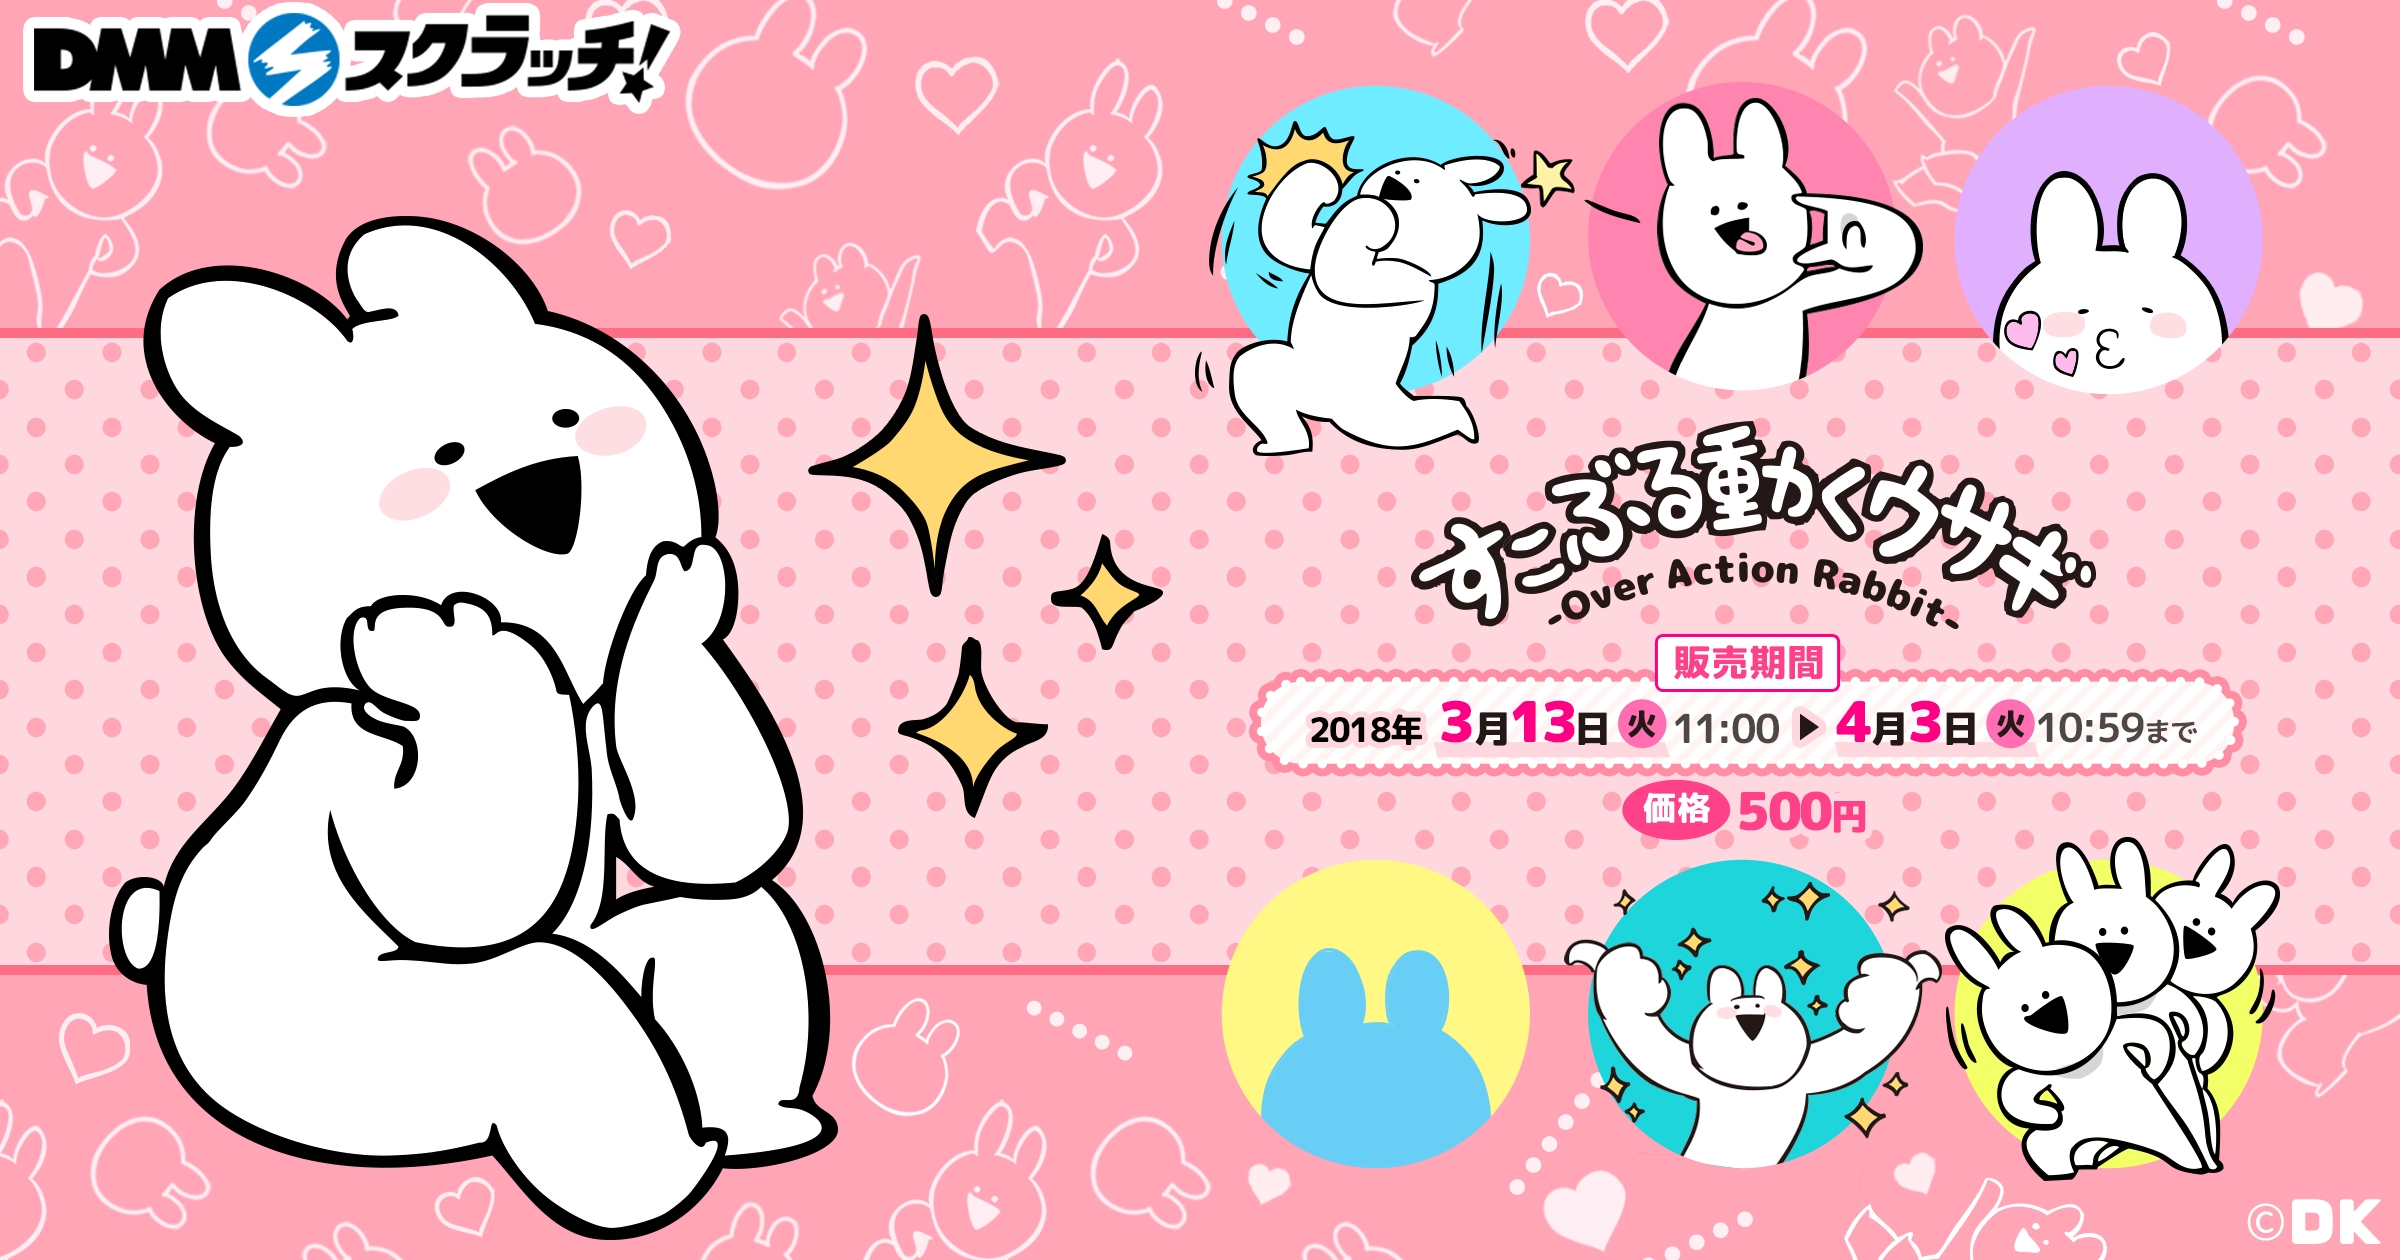 韓国で大人気 すこぶる動くウサギ のオリジナルグッズがdmmスクラッチに登場 合同会社dmm Comのプレスリリース